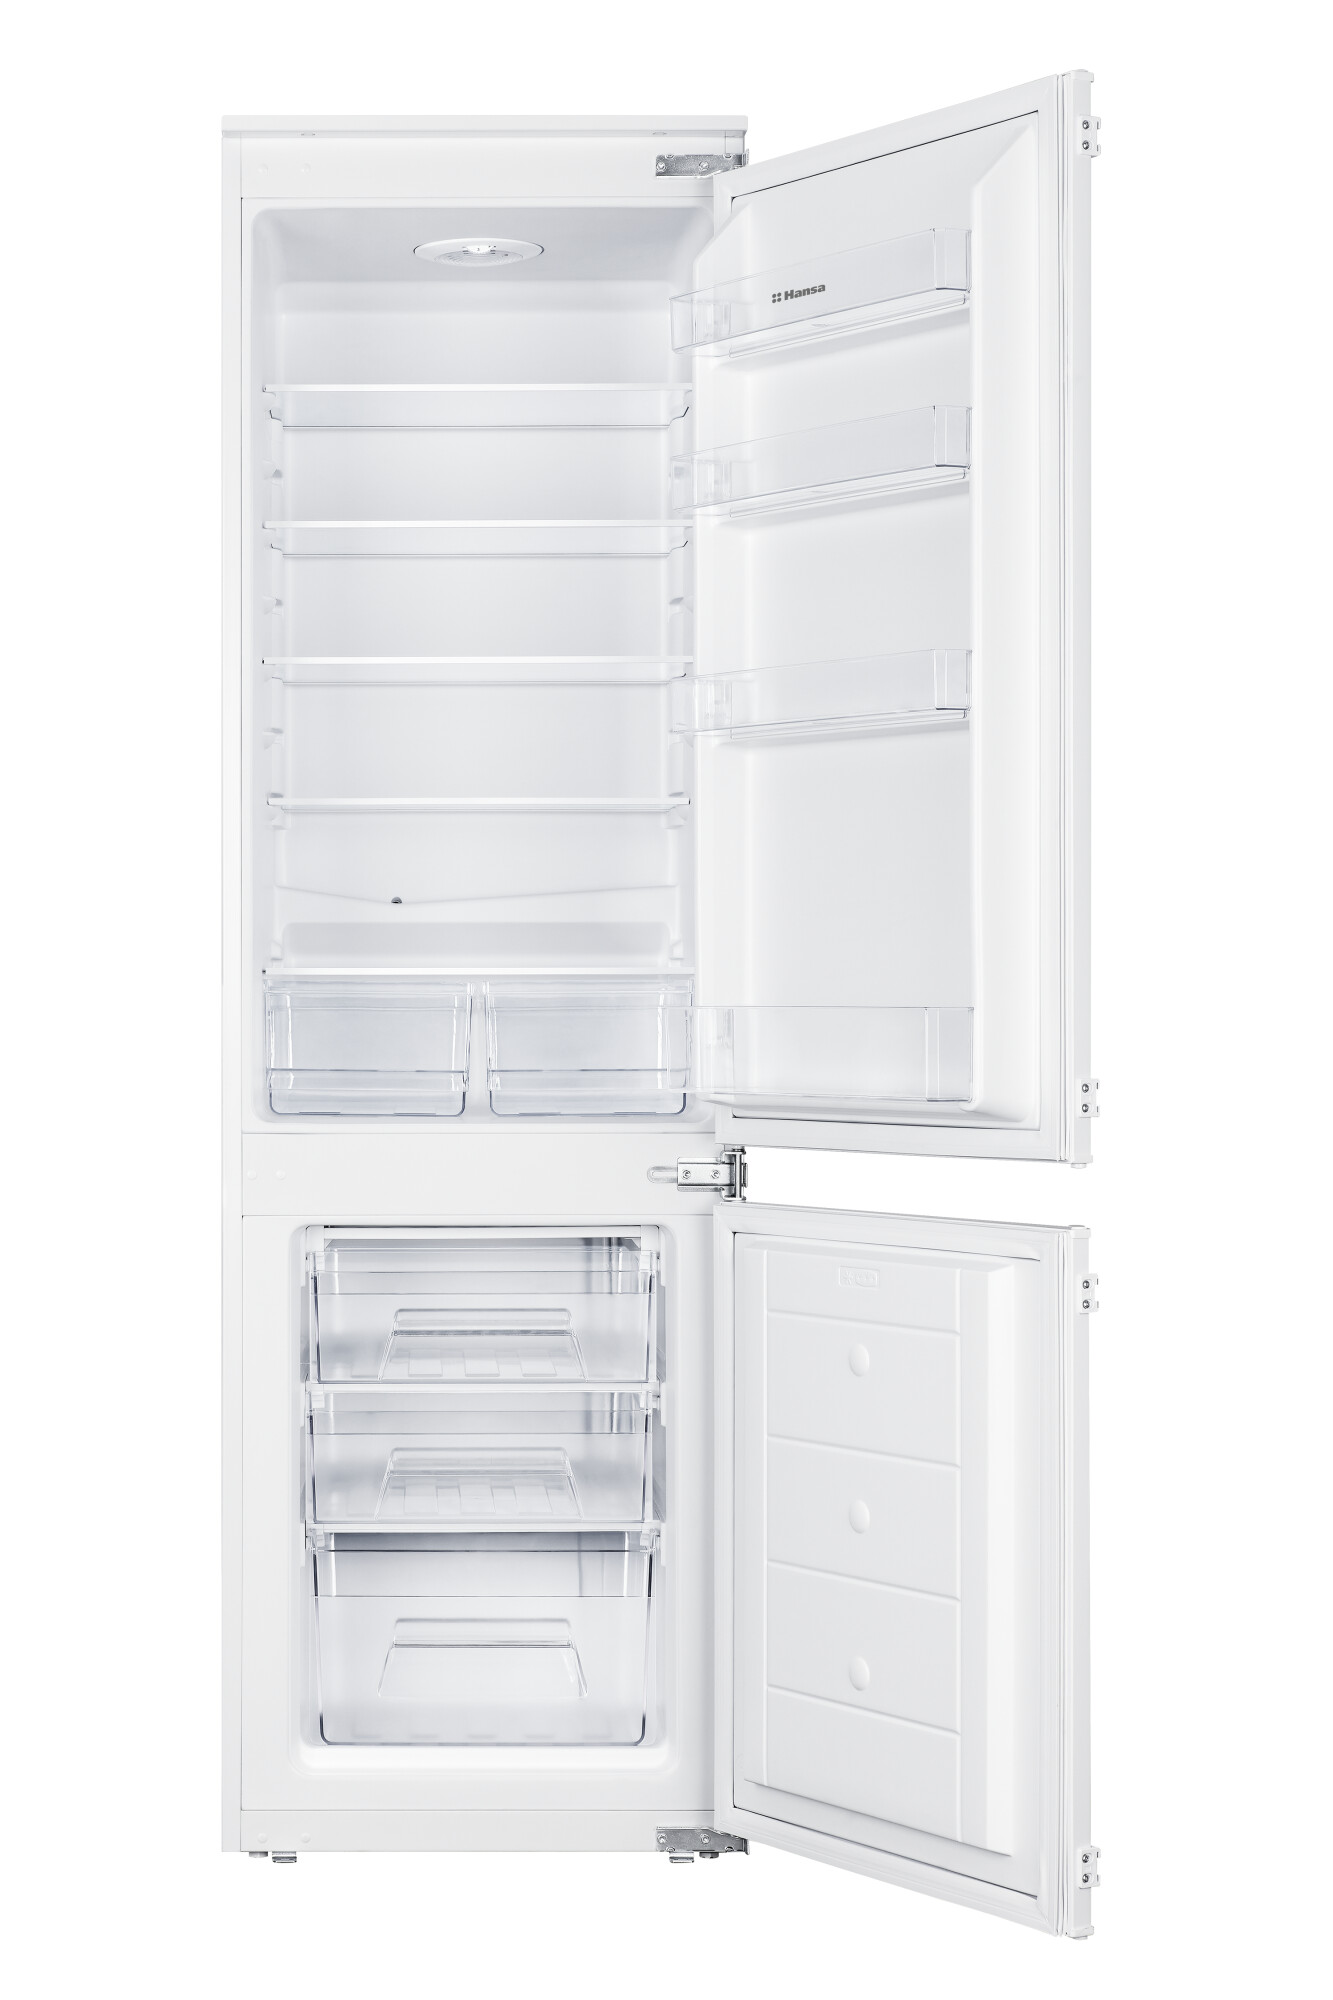 Встраиваемый холодильник Hansa BK315.3 белый холодильник двухкамерный hansa bk2676 2nfzc 193x54x55 см 1 компрессор белый